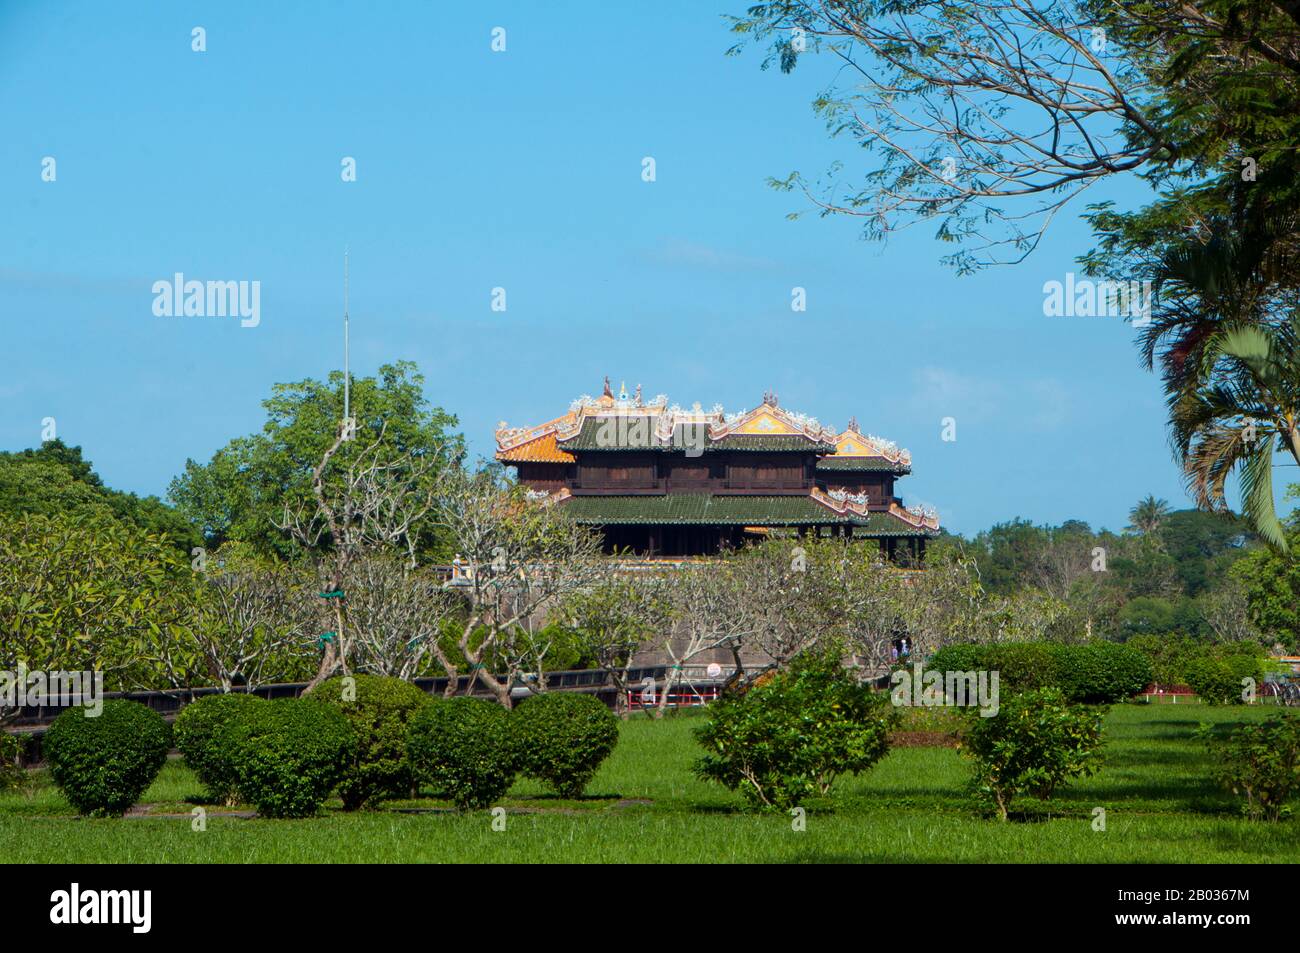 Le Ngọ Môn (caractère chinois : 午門), également connu sous le nom de porte de Noon, est la porte principale de la ville impériale, Huế, située dans la citadelle de Huế. Il a été construit en 1833 dans le style traditionnel vietnamien Nguyen sous la domination de l'empereur Minh Mang. L'empereur Gia long ordonna la construction de la Citadelle de Hue en 1805. Le vaste complexe est construit selon les notions de fengshui ou de géomancy chinoise, mais suivant les principes militaires de l'architecte militaire français du XVIIIe siècle, Sébastien de Vauban. Le résultat est un hybride inhabituel et élégant, une ville impériale de style chinois soigneusement alig Banque D'Images